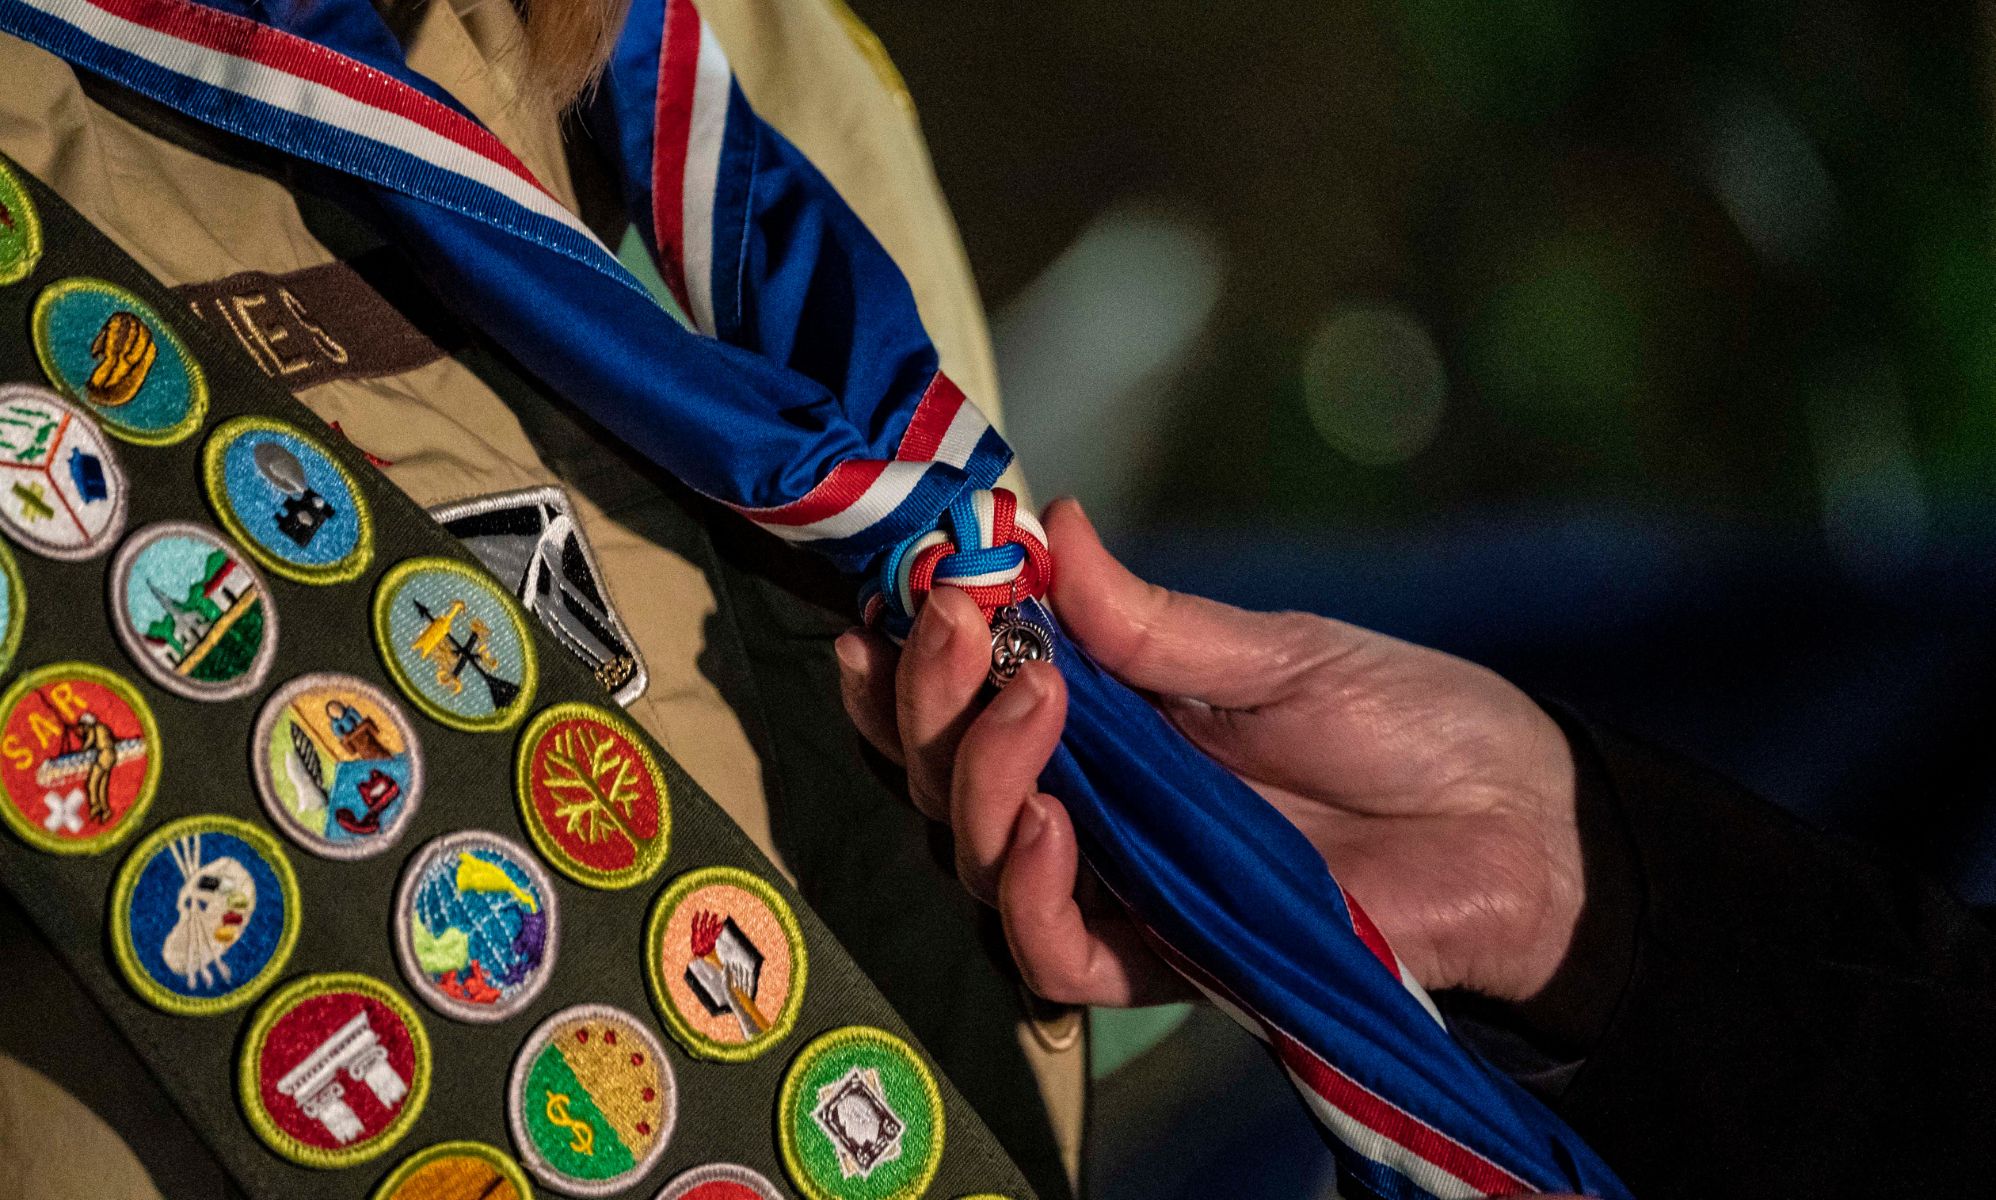 Boy Scouts rebranding sparks conservative backlash.